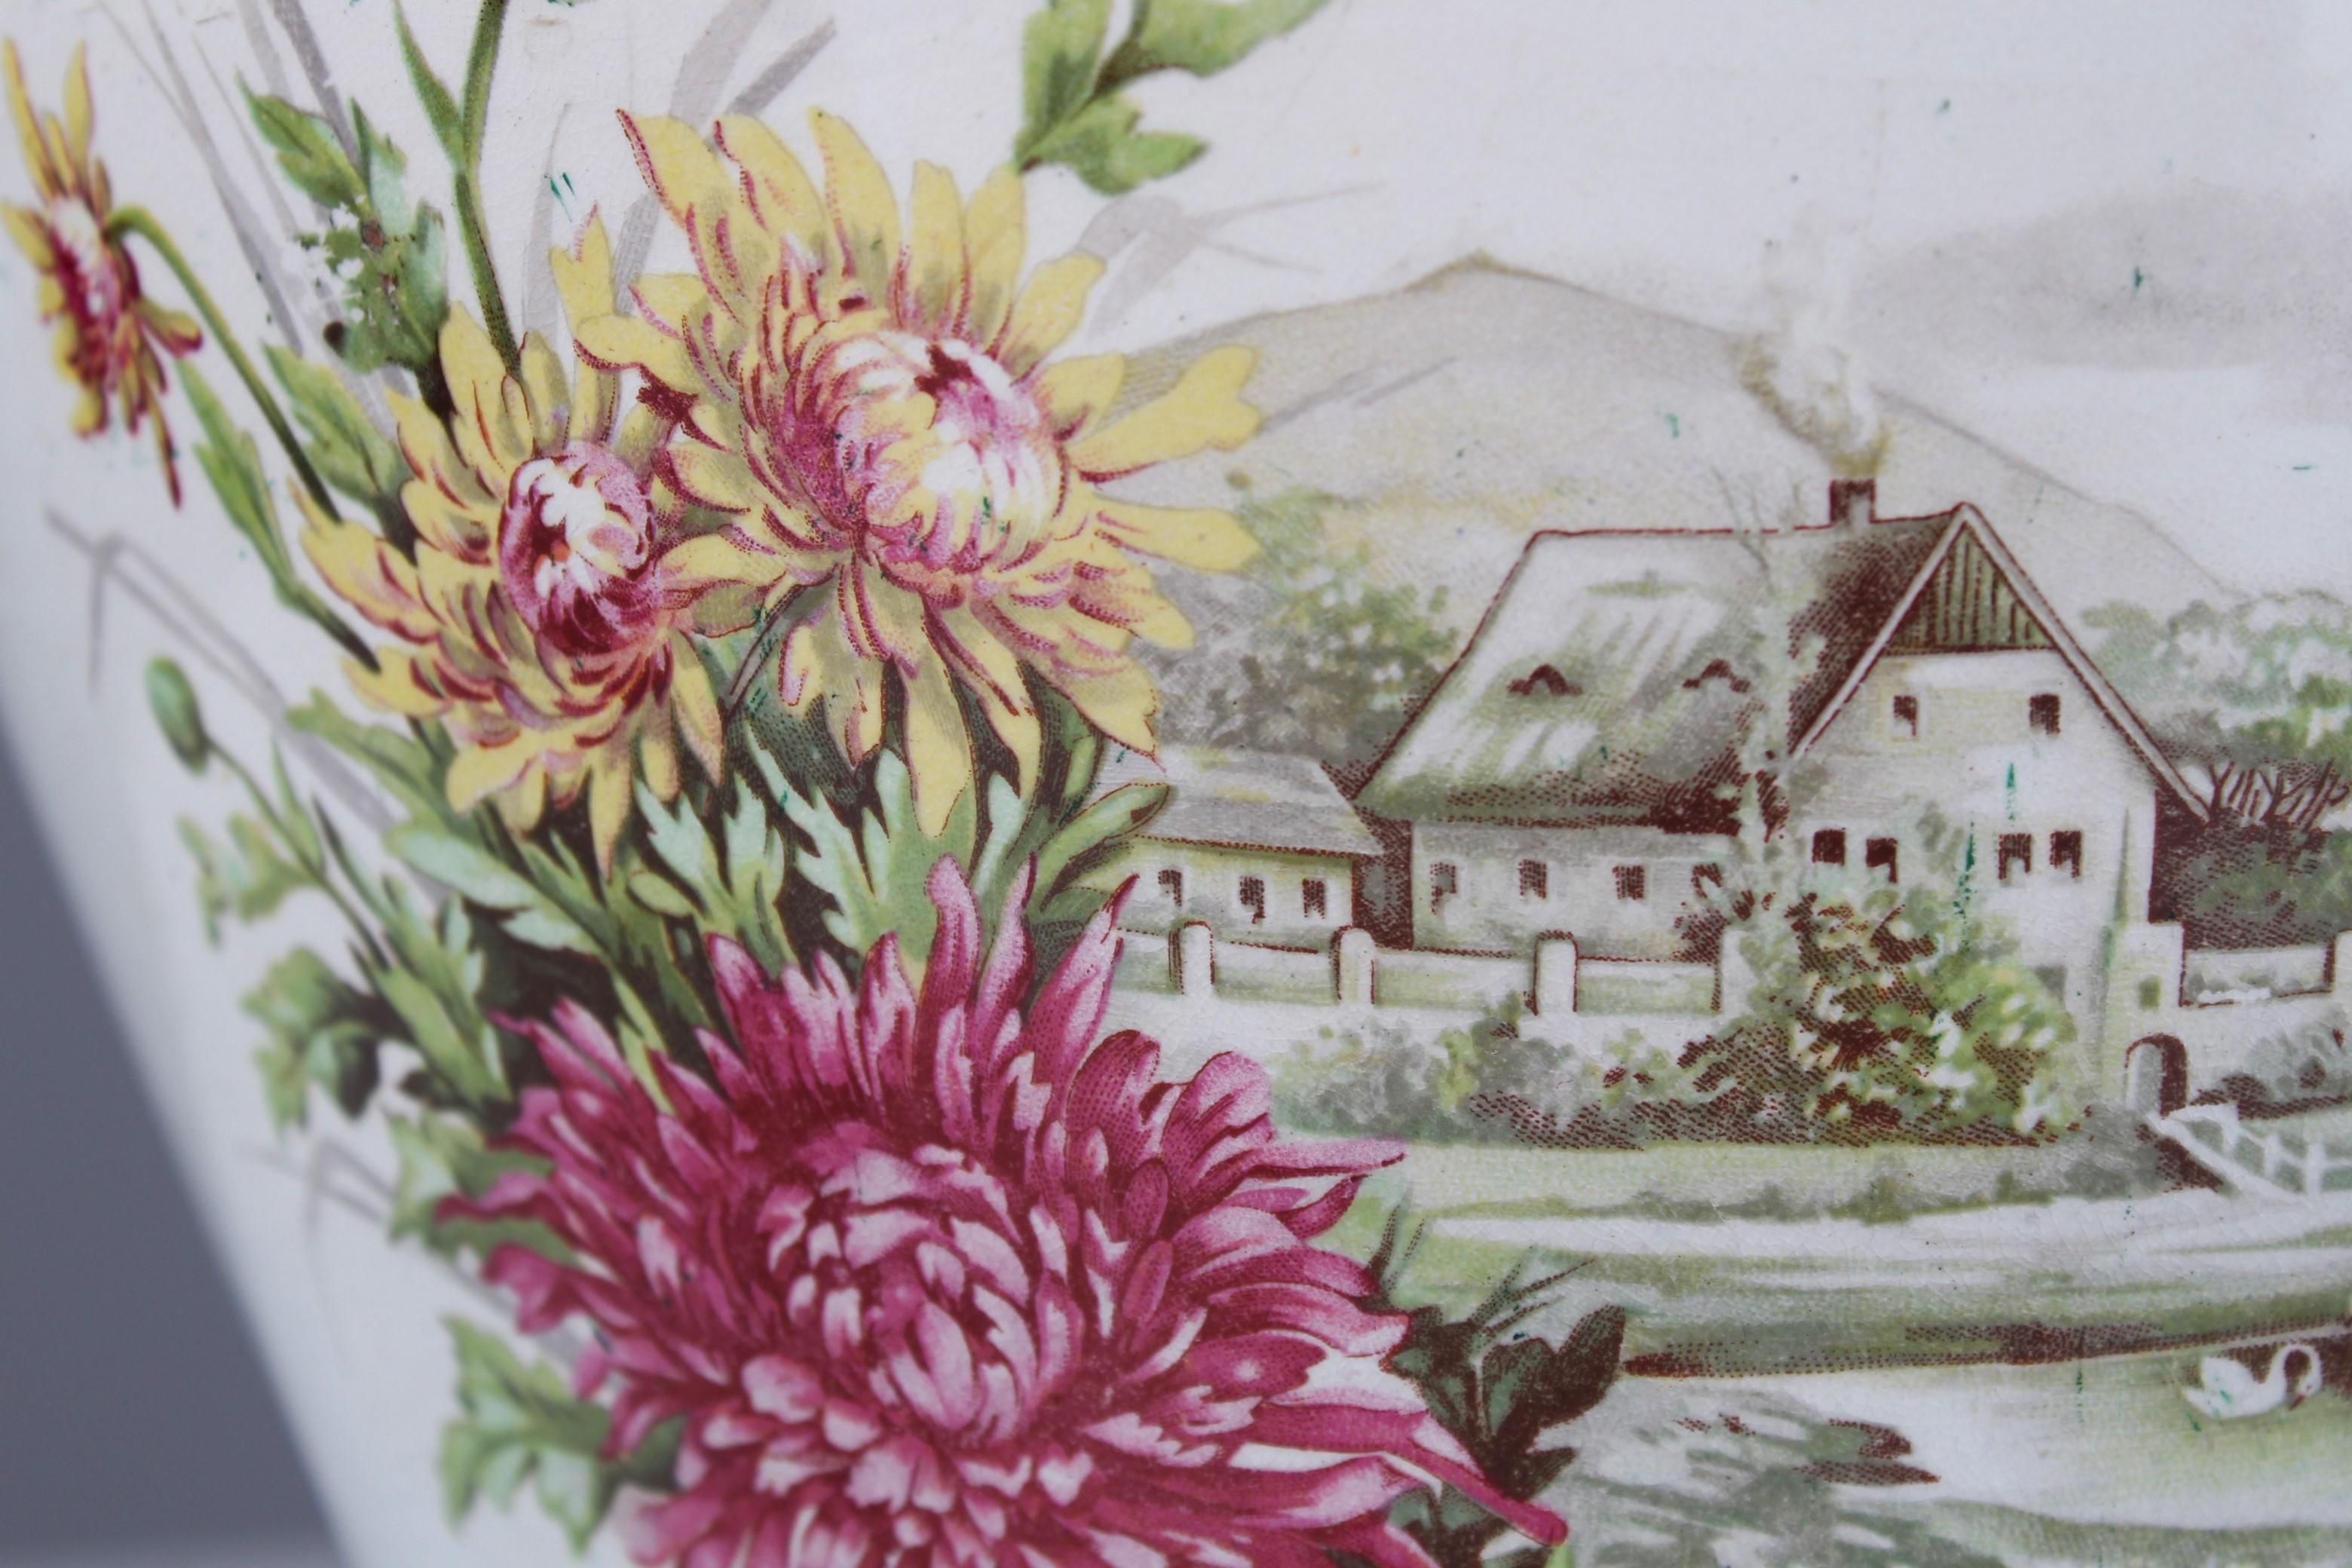 Joli pot de fleurs, France, 1880.
Avec une bordure incurvée et dorée sur le dessus.
La face avant représente une maison de campagne peinte à la main avec un étang dans lequel nagent deux cygnes. Des rinceaux floraux roses et jaunes encadrent la